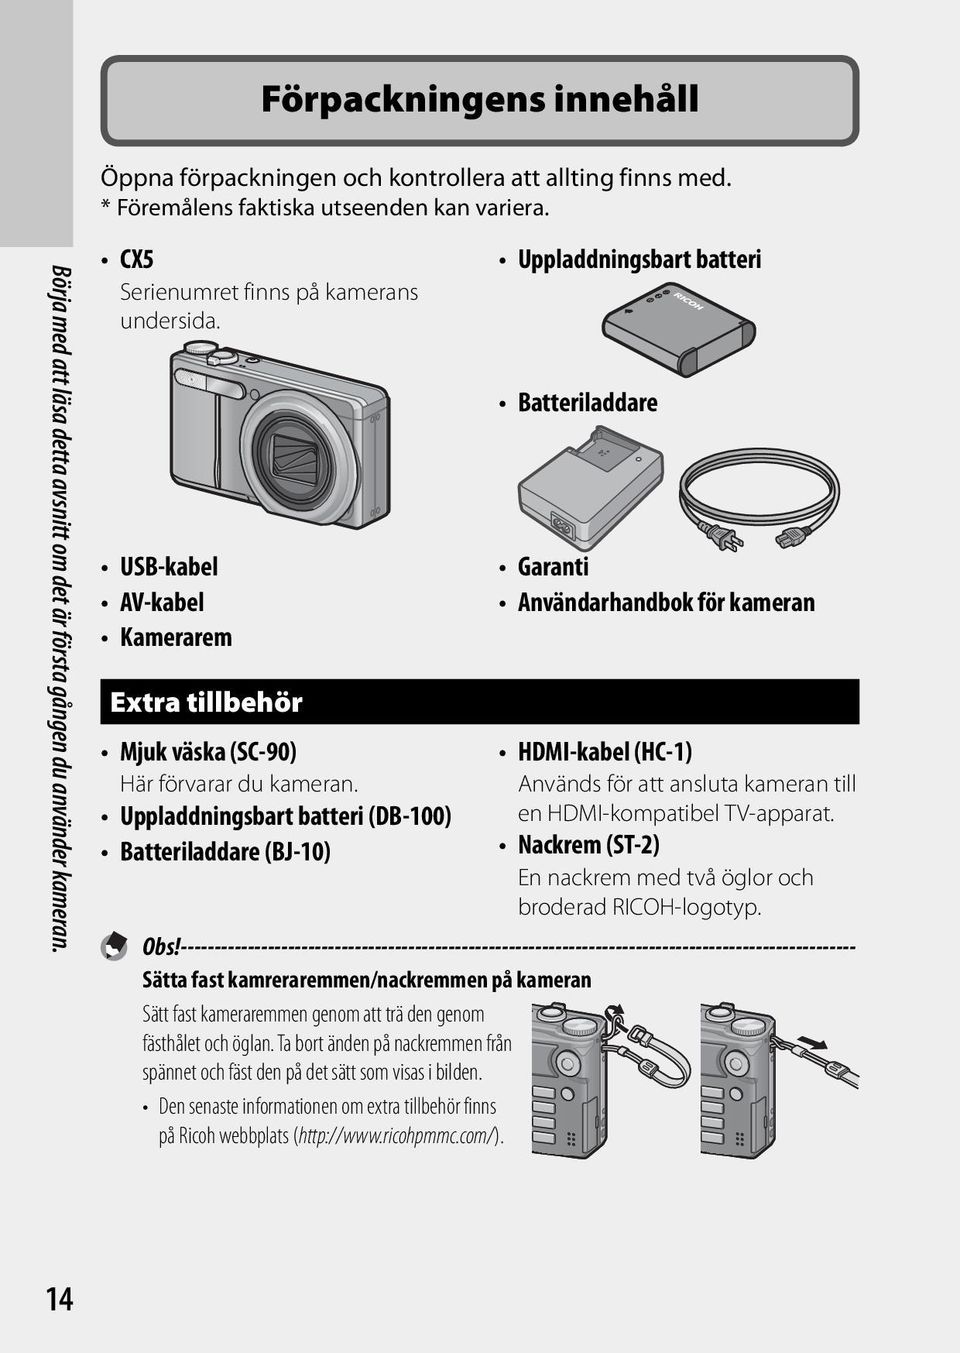 Uppladdningsbart batteri (DB-100) Batteriladdare (BJ-10) Uppladdningsbart batteri Batteriladdare Garanti Användarhandbok för kameran HDMI-kabel (HC-1) Används för att ansluta kameran till en